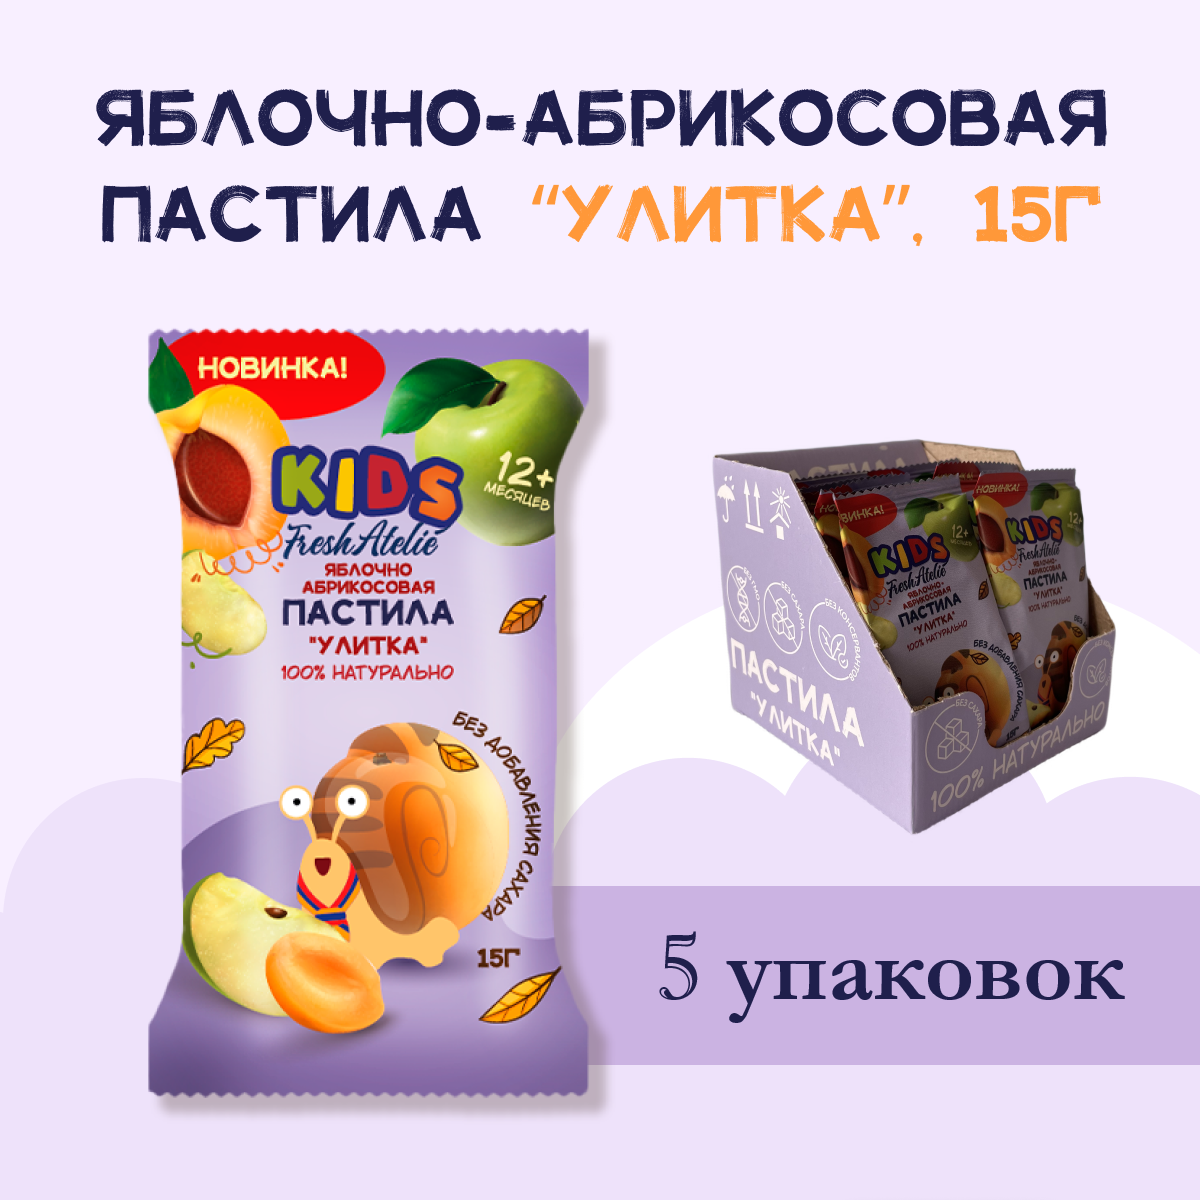 Пастила Яблочно-Абрикосовая для детей FRESH ATELIE KIDS Улитка 15гр, 5 упаковок